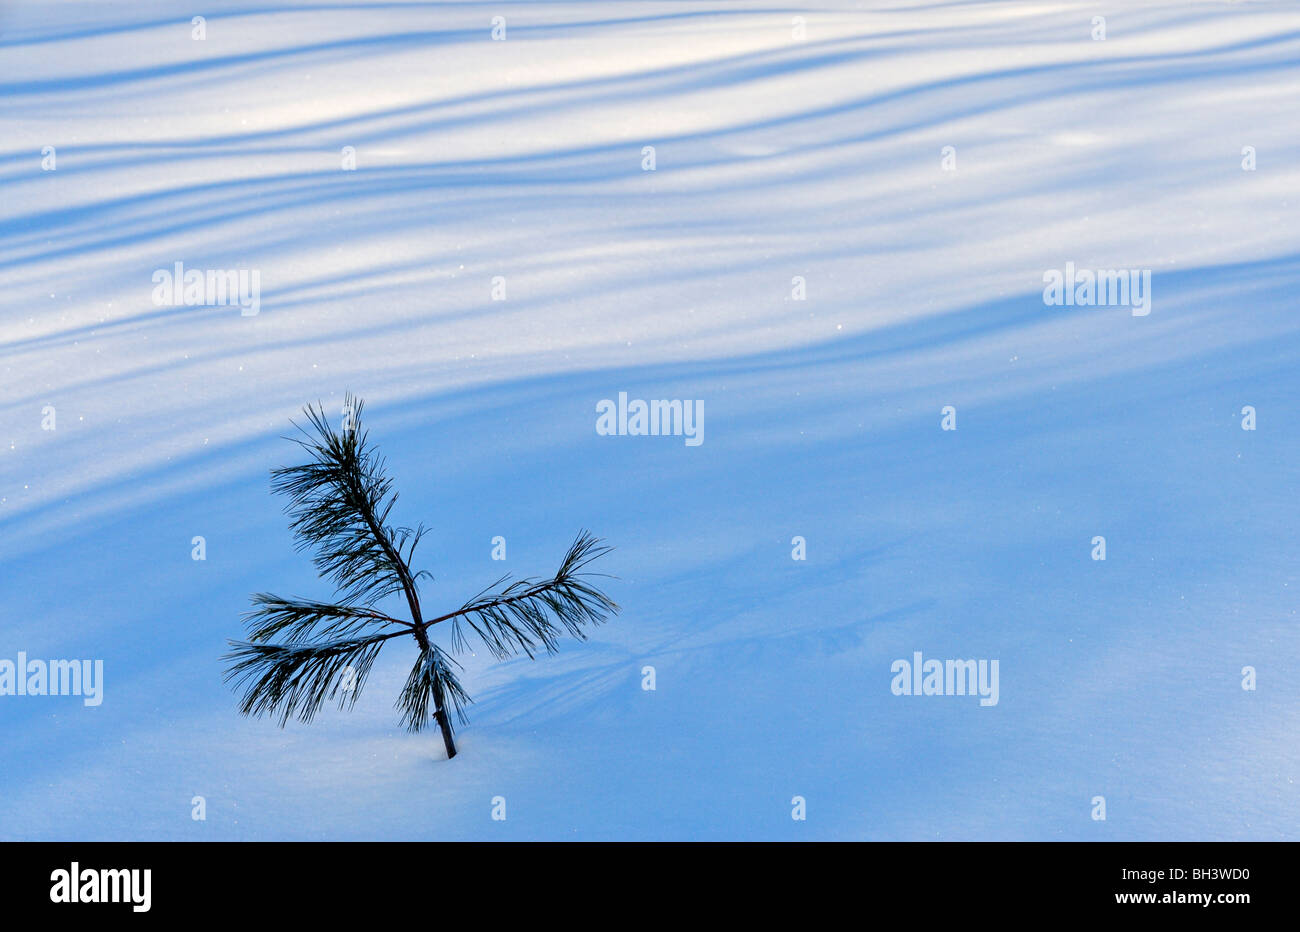 White pine sapling (Pinus strobus) with tree shadows, Greater Sudbury, Ontario, Canada Stock Photo